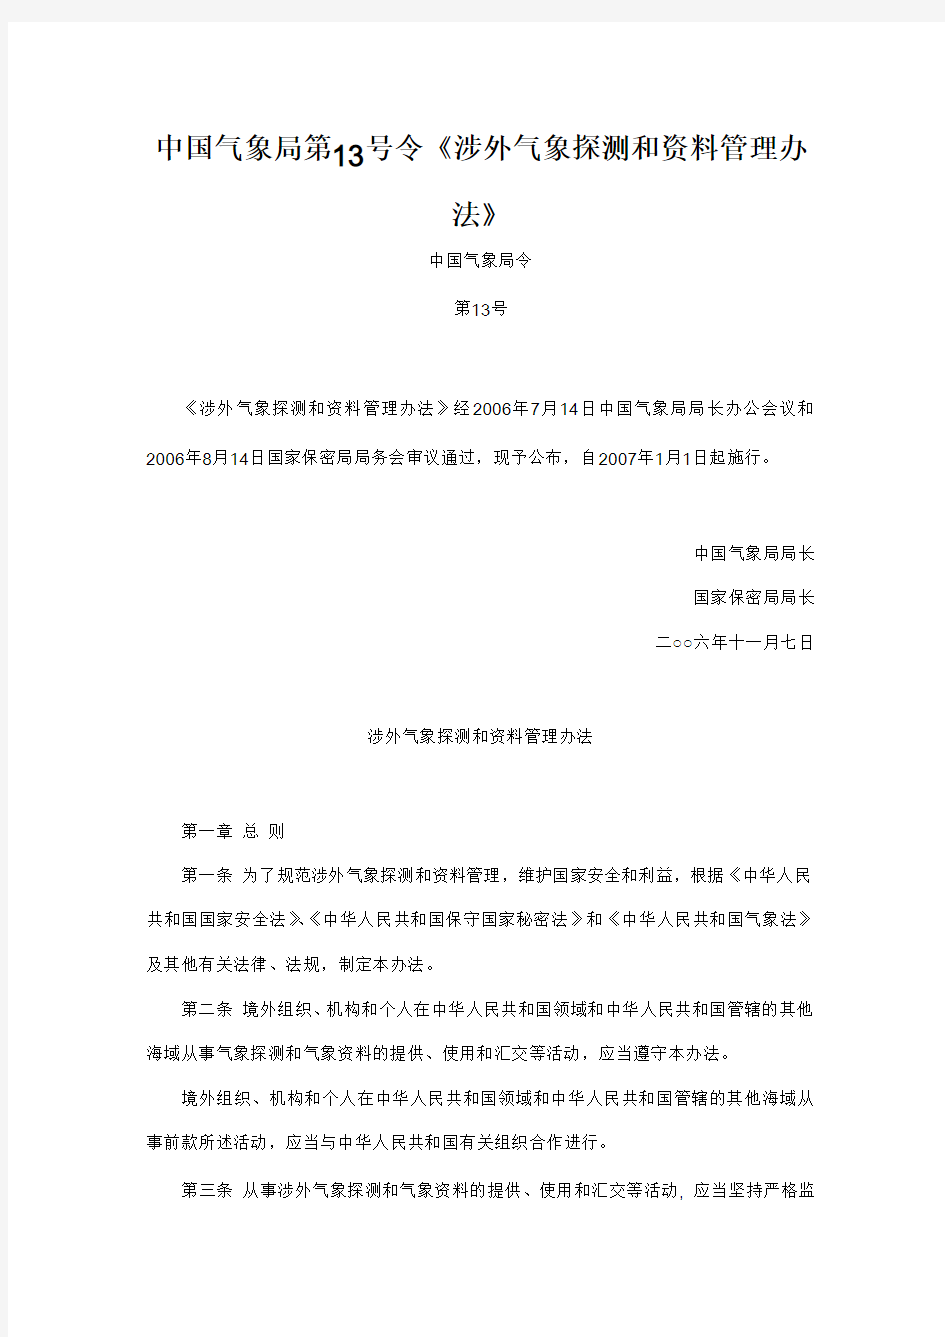 中国气象局第13号令《涉外气象探测和资料管理办法》